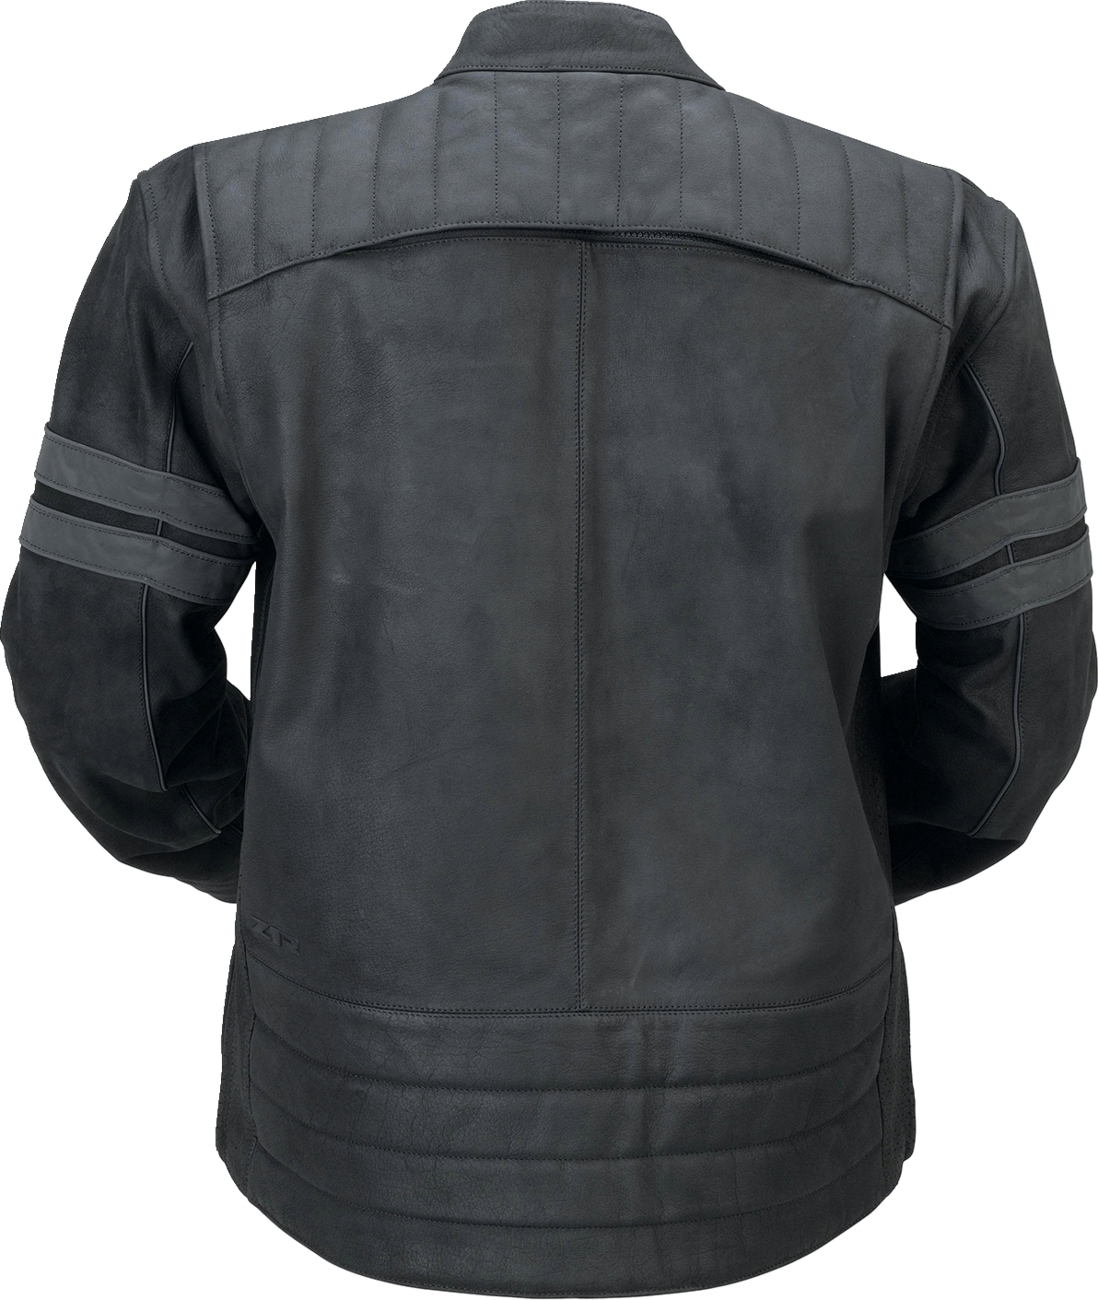 Z1R Remedy Leather Jacket - Black - 4XL 2810-3895